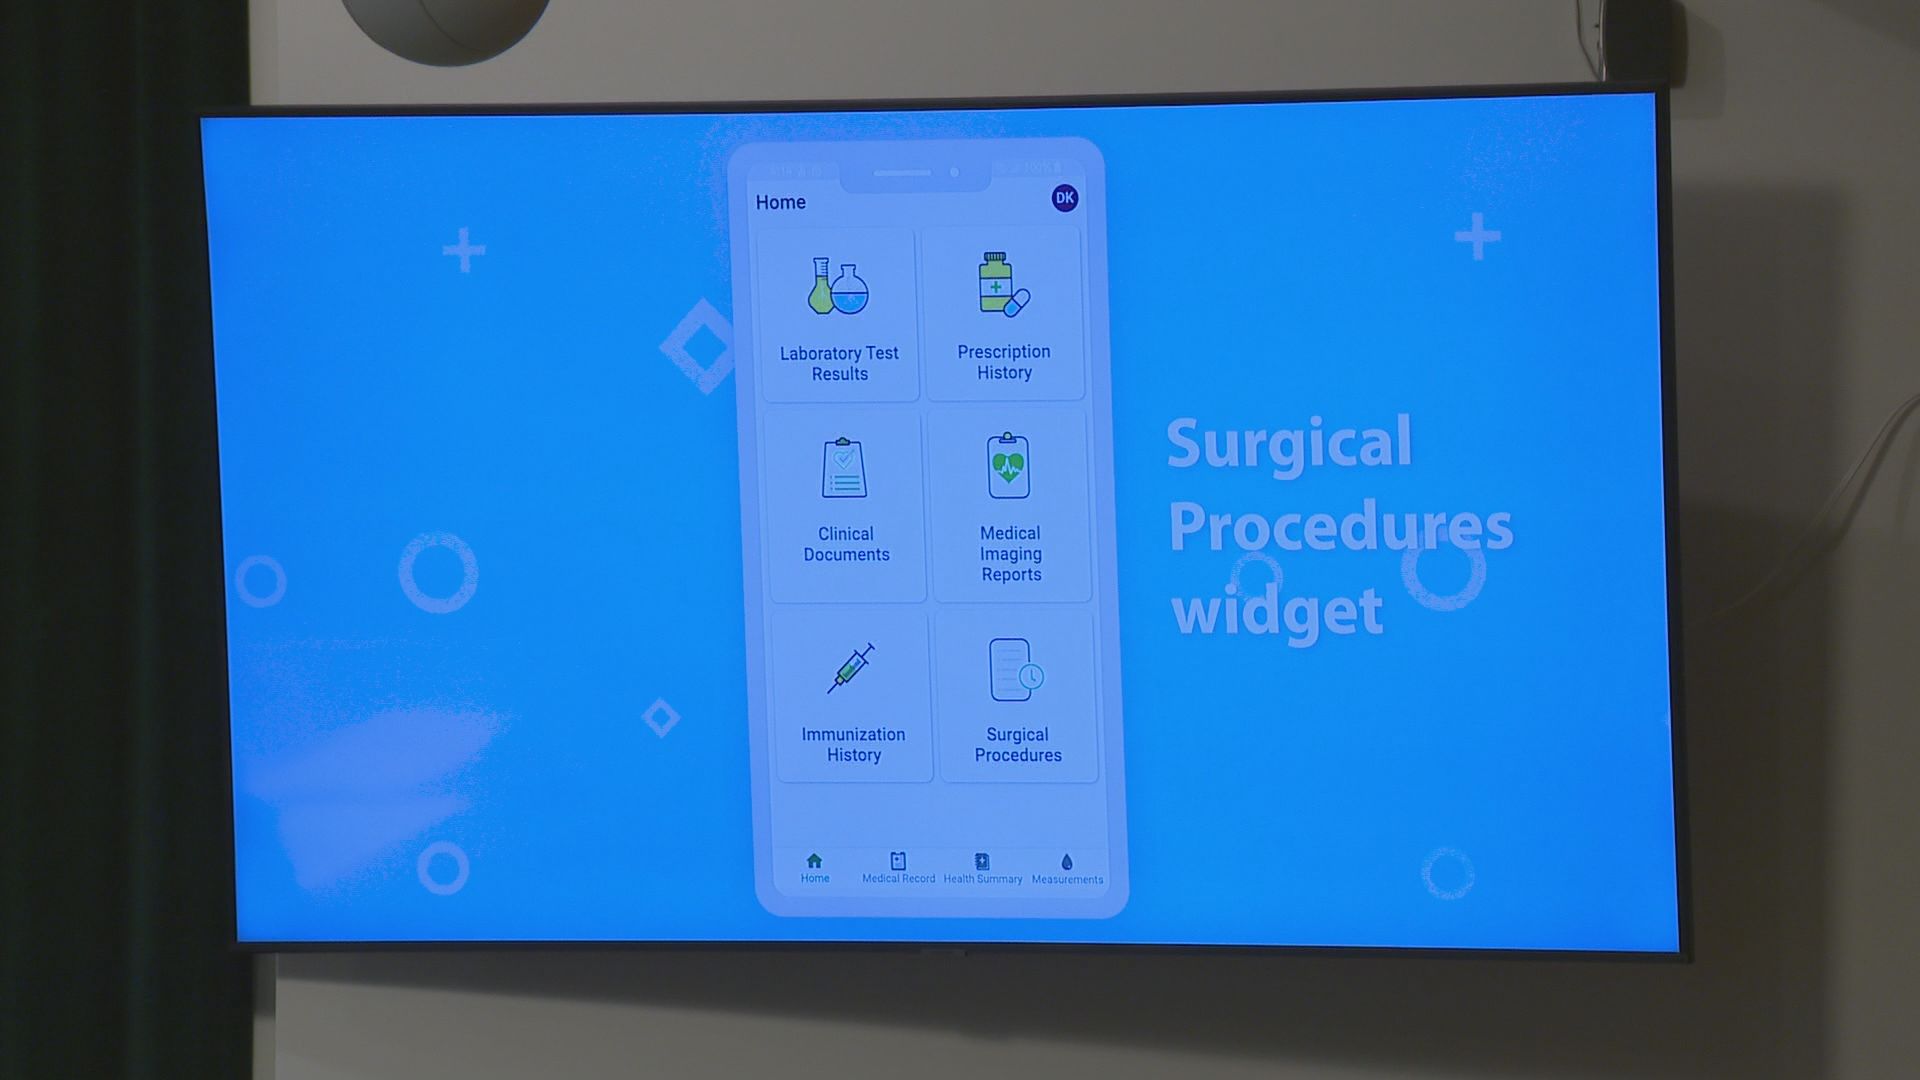 Saskatchewan patients can now access surgical procedure information online